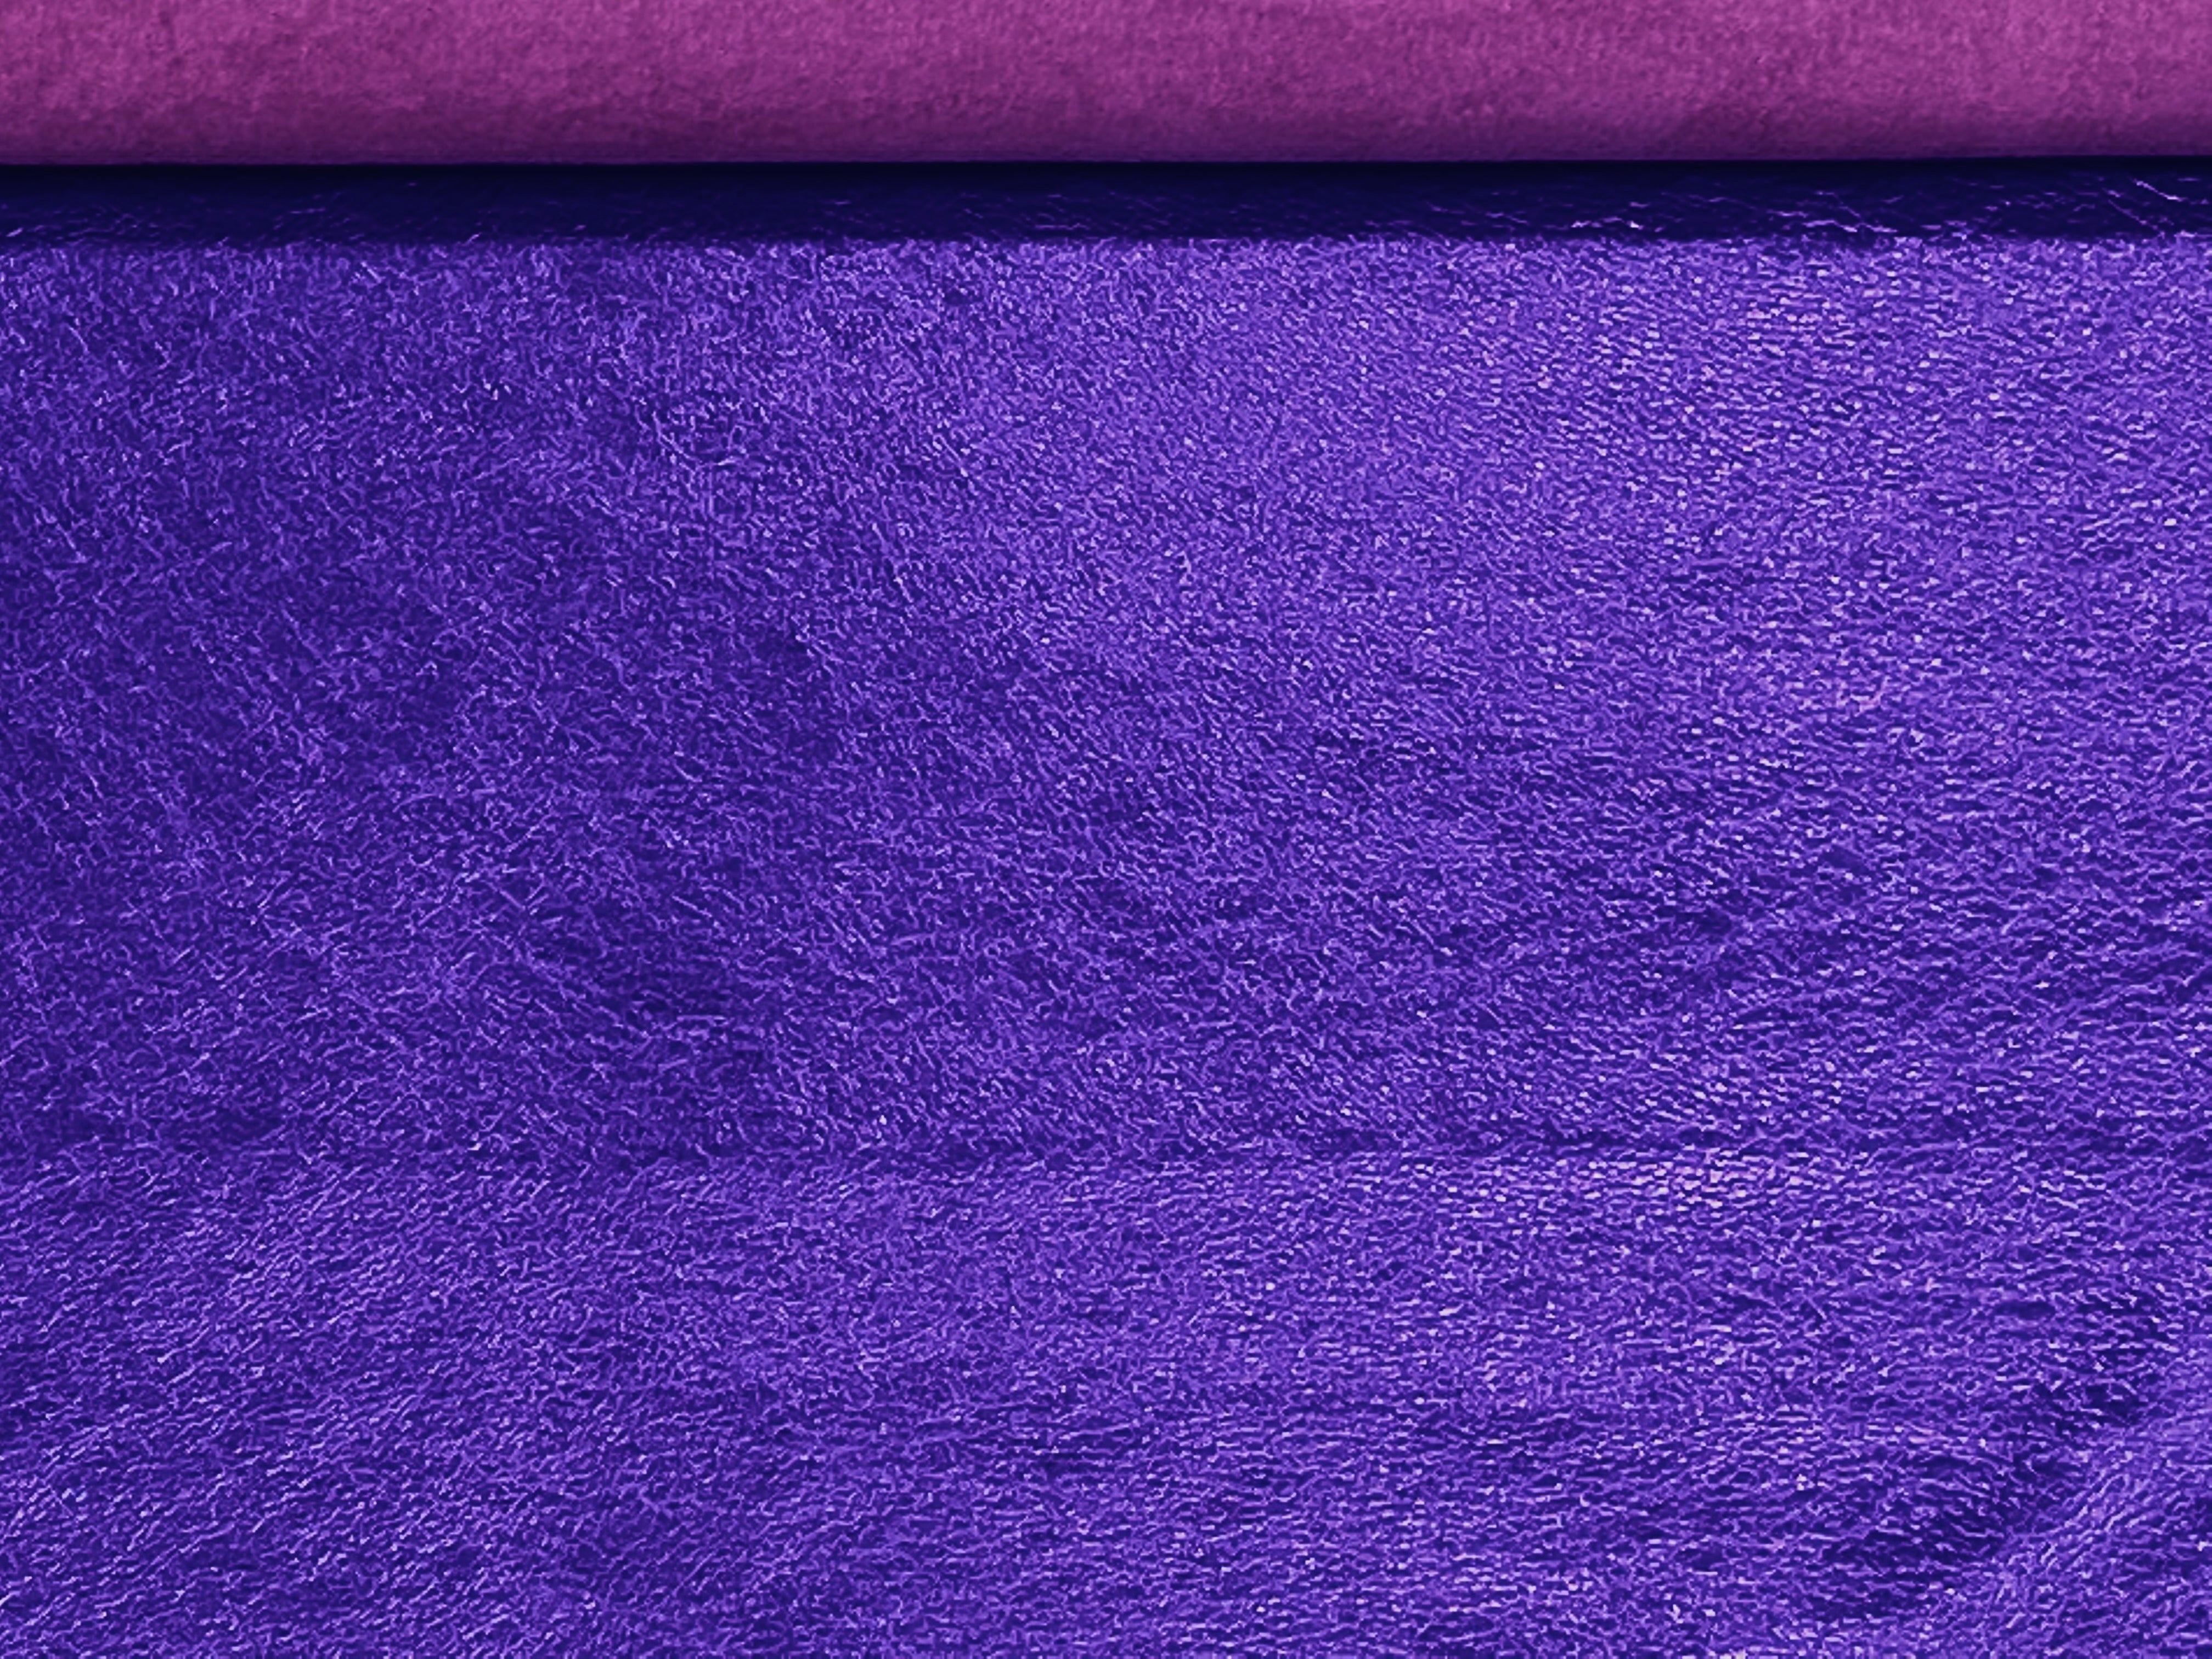 Lavender, Metallic Foiled Leather Pig Skin : (0.6-0.7mm 1.5oz) 15